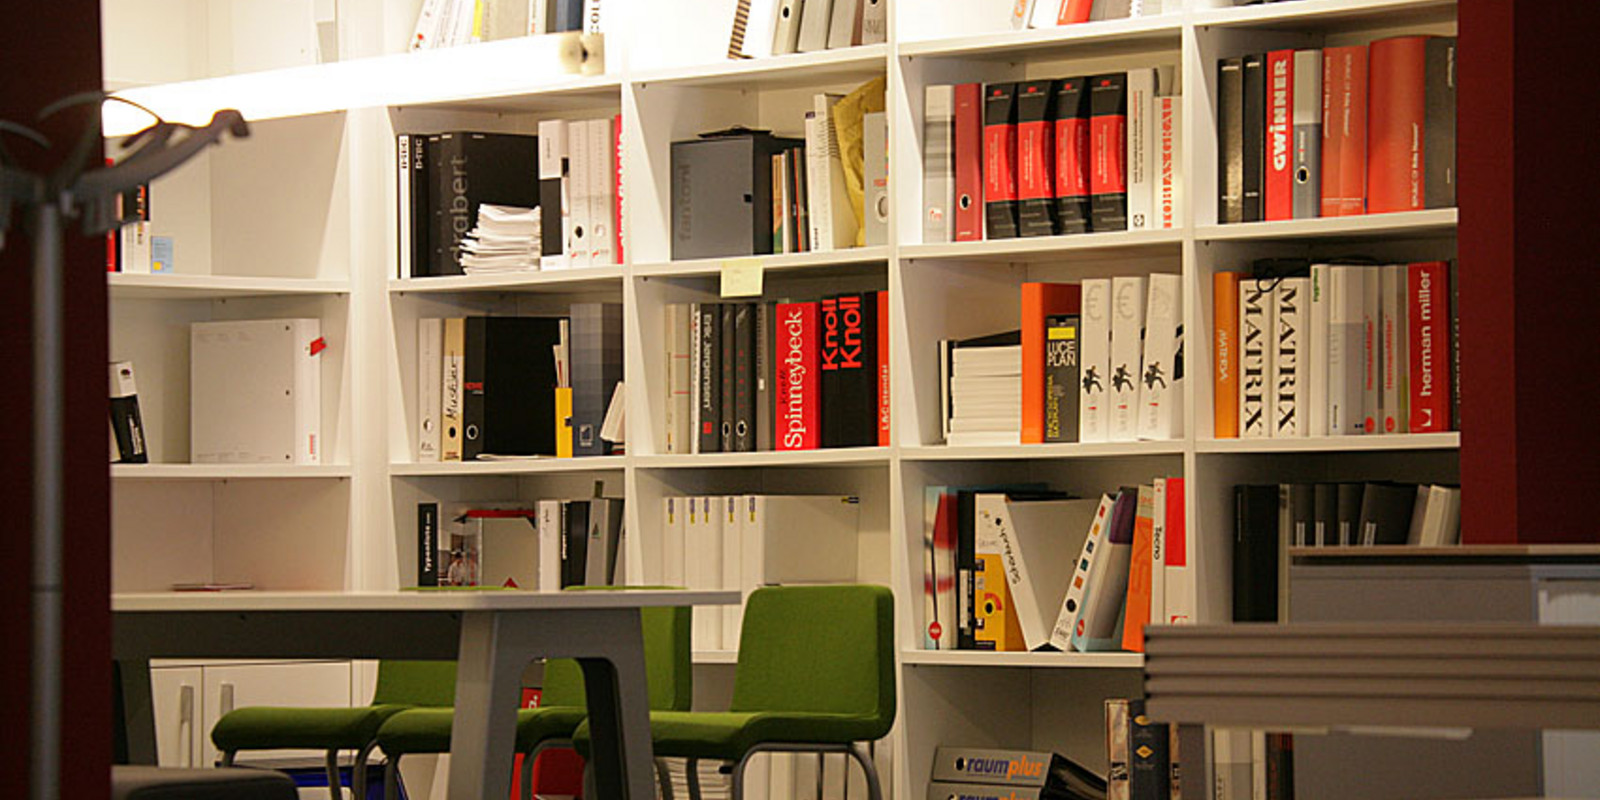 pro office Bielefeld in neuem Erscheinungsbild Bild 31